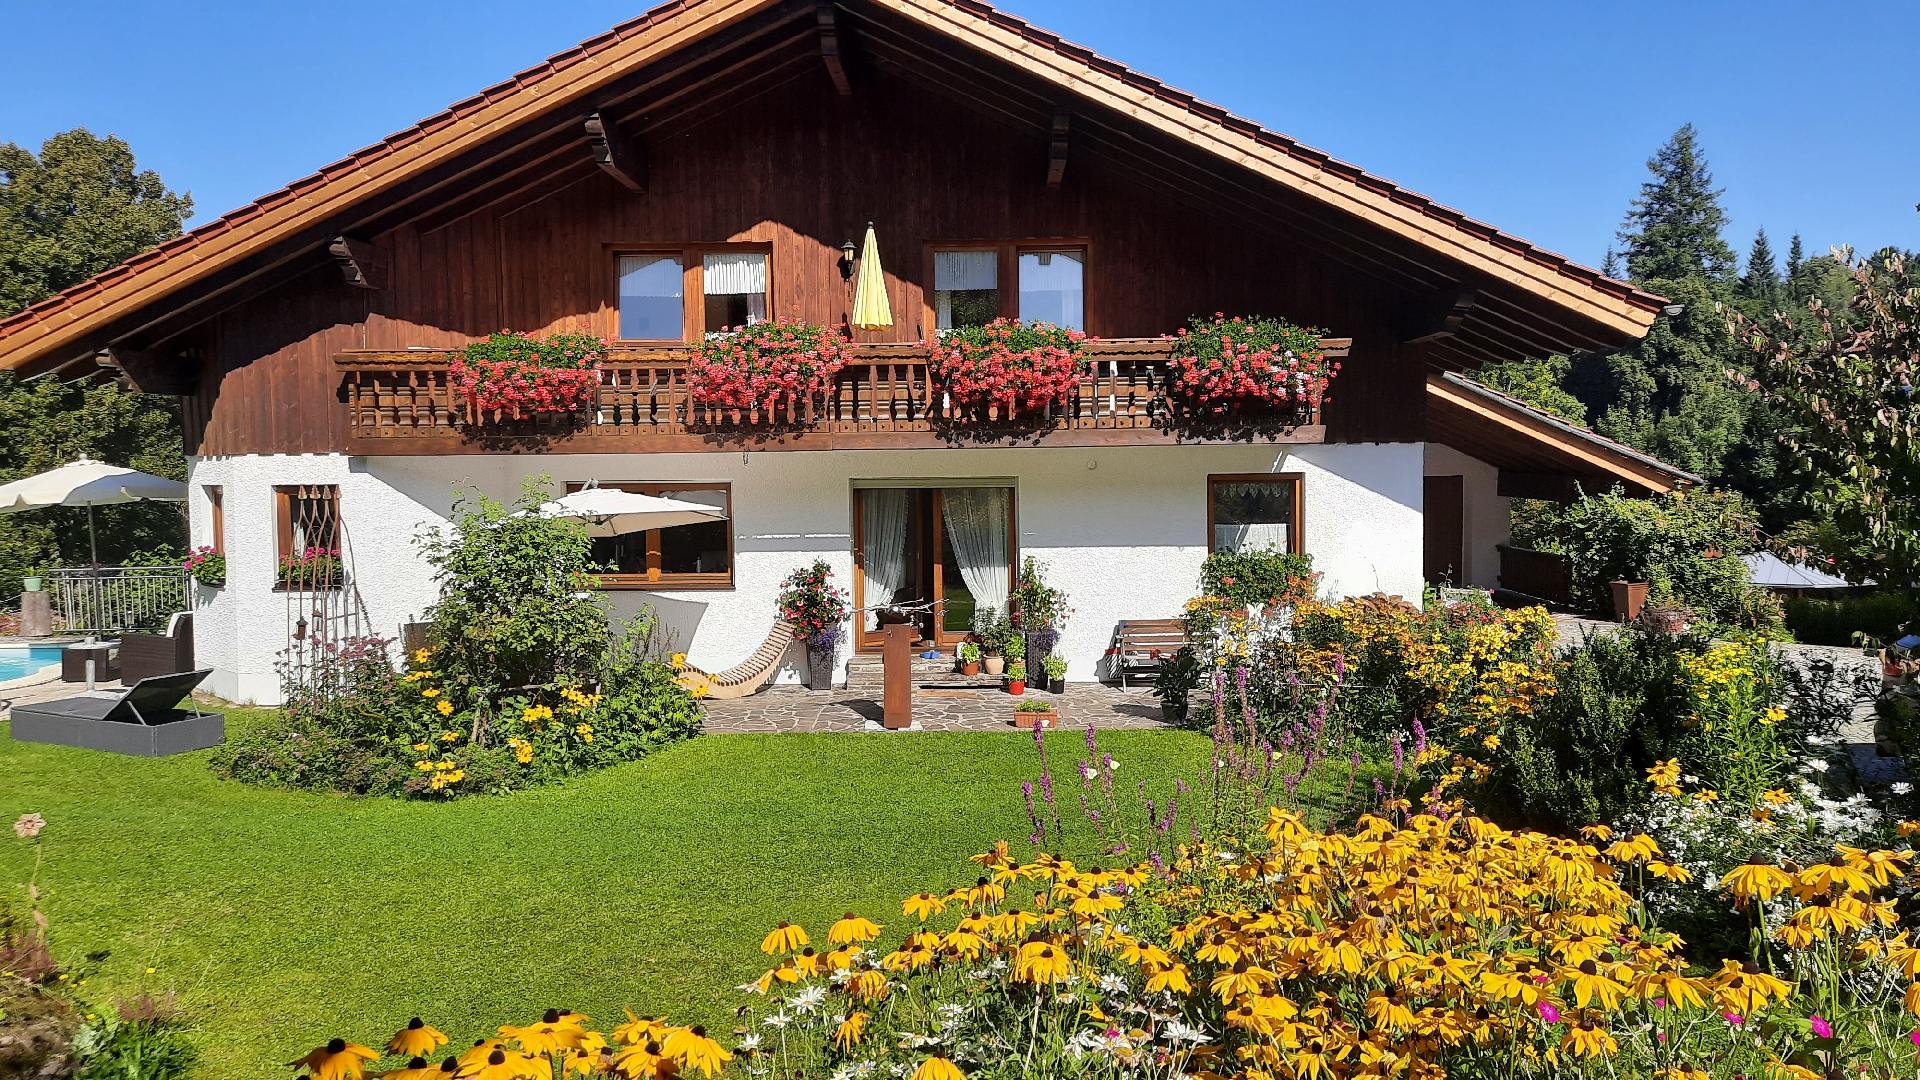 Ferienwohnung für 2 Personen ca. 65 m² i Ferienhaus in Deutschland